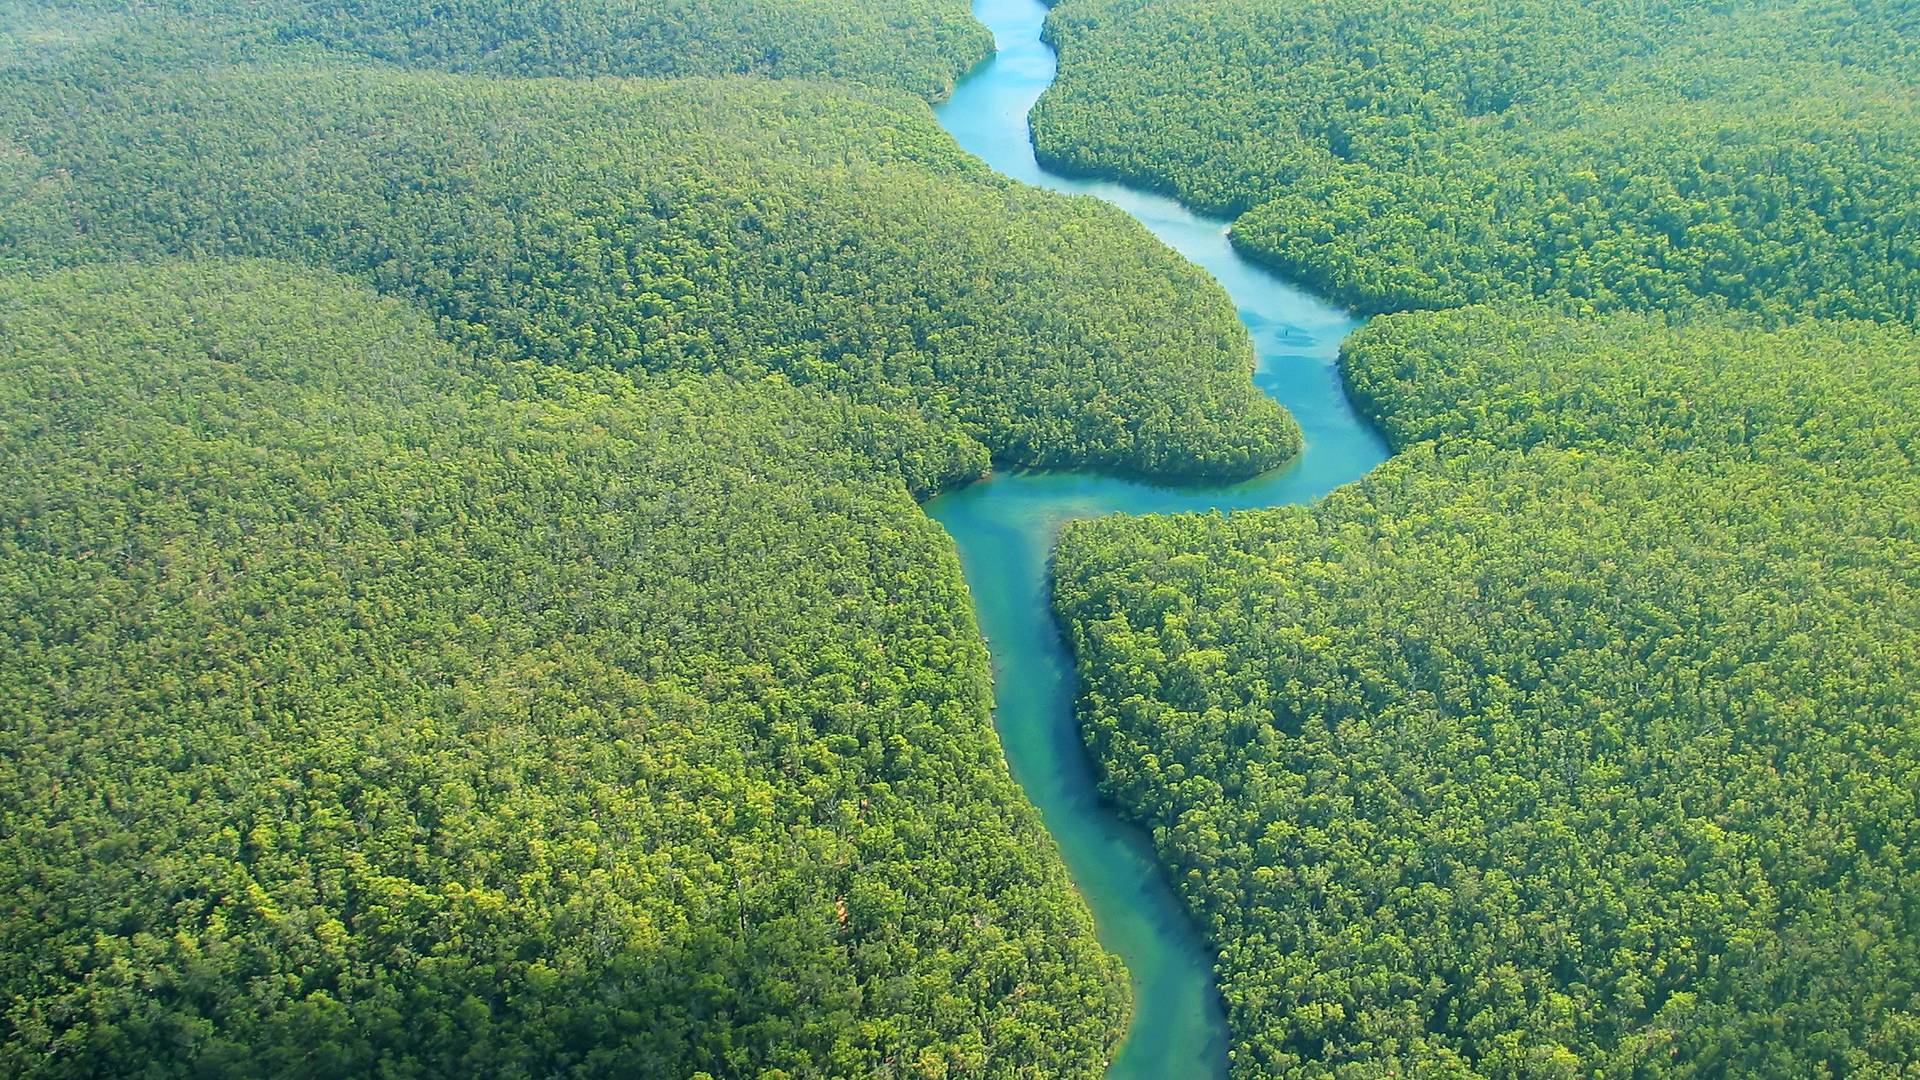 Amazzonia experience, seguendo il corso del Rio delle Amazzoni